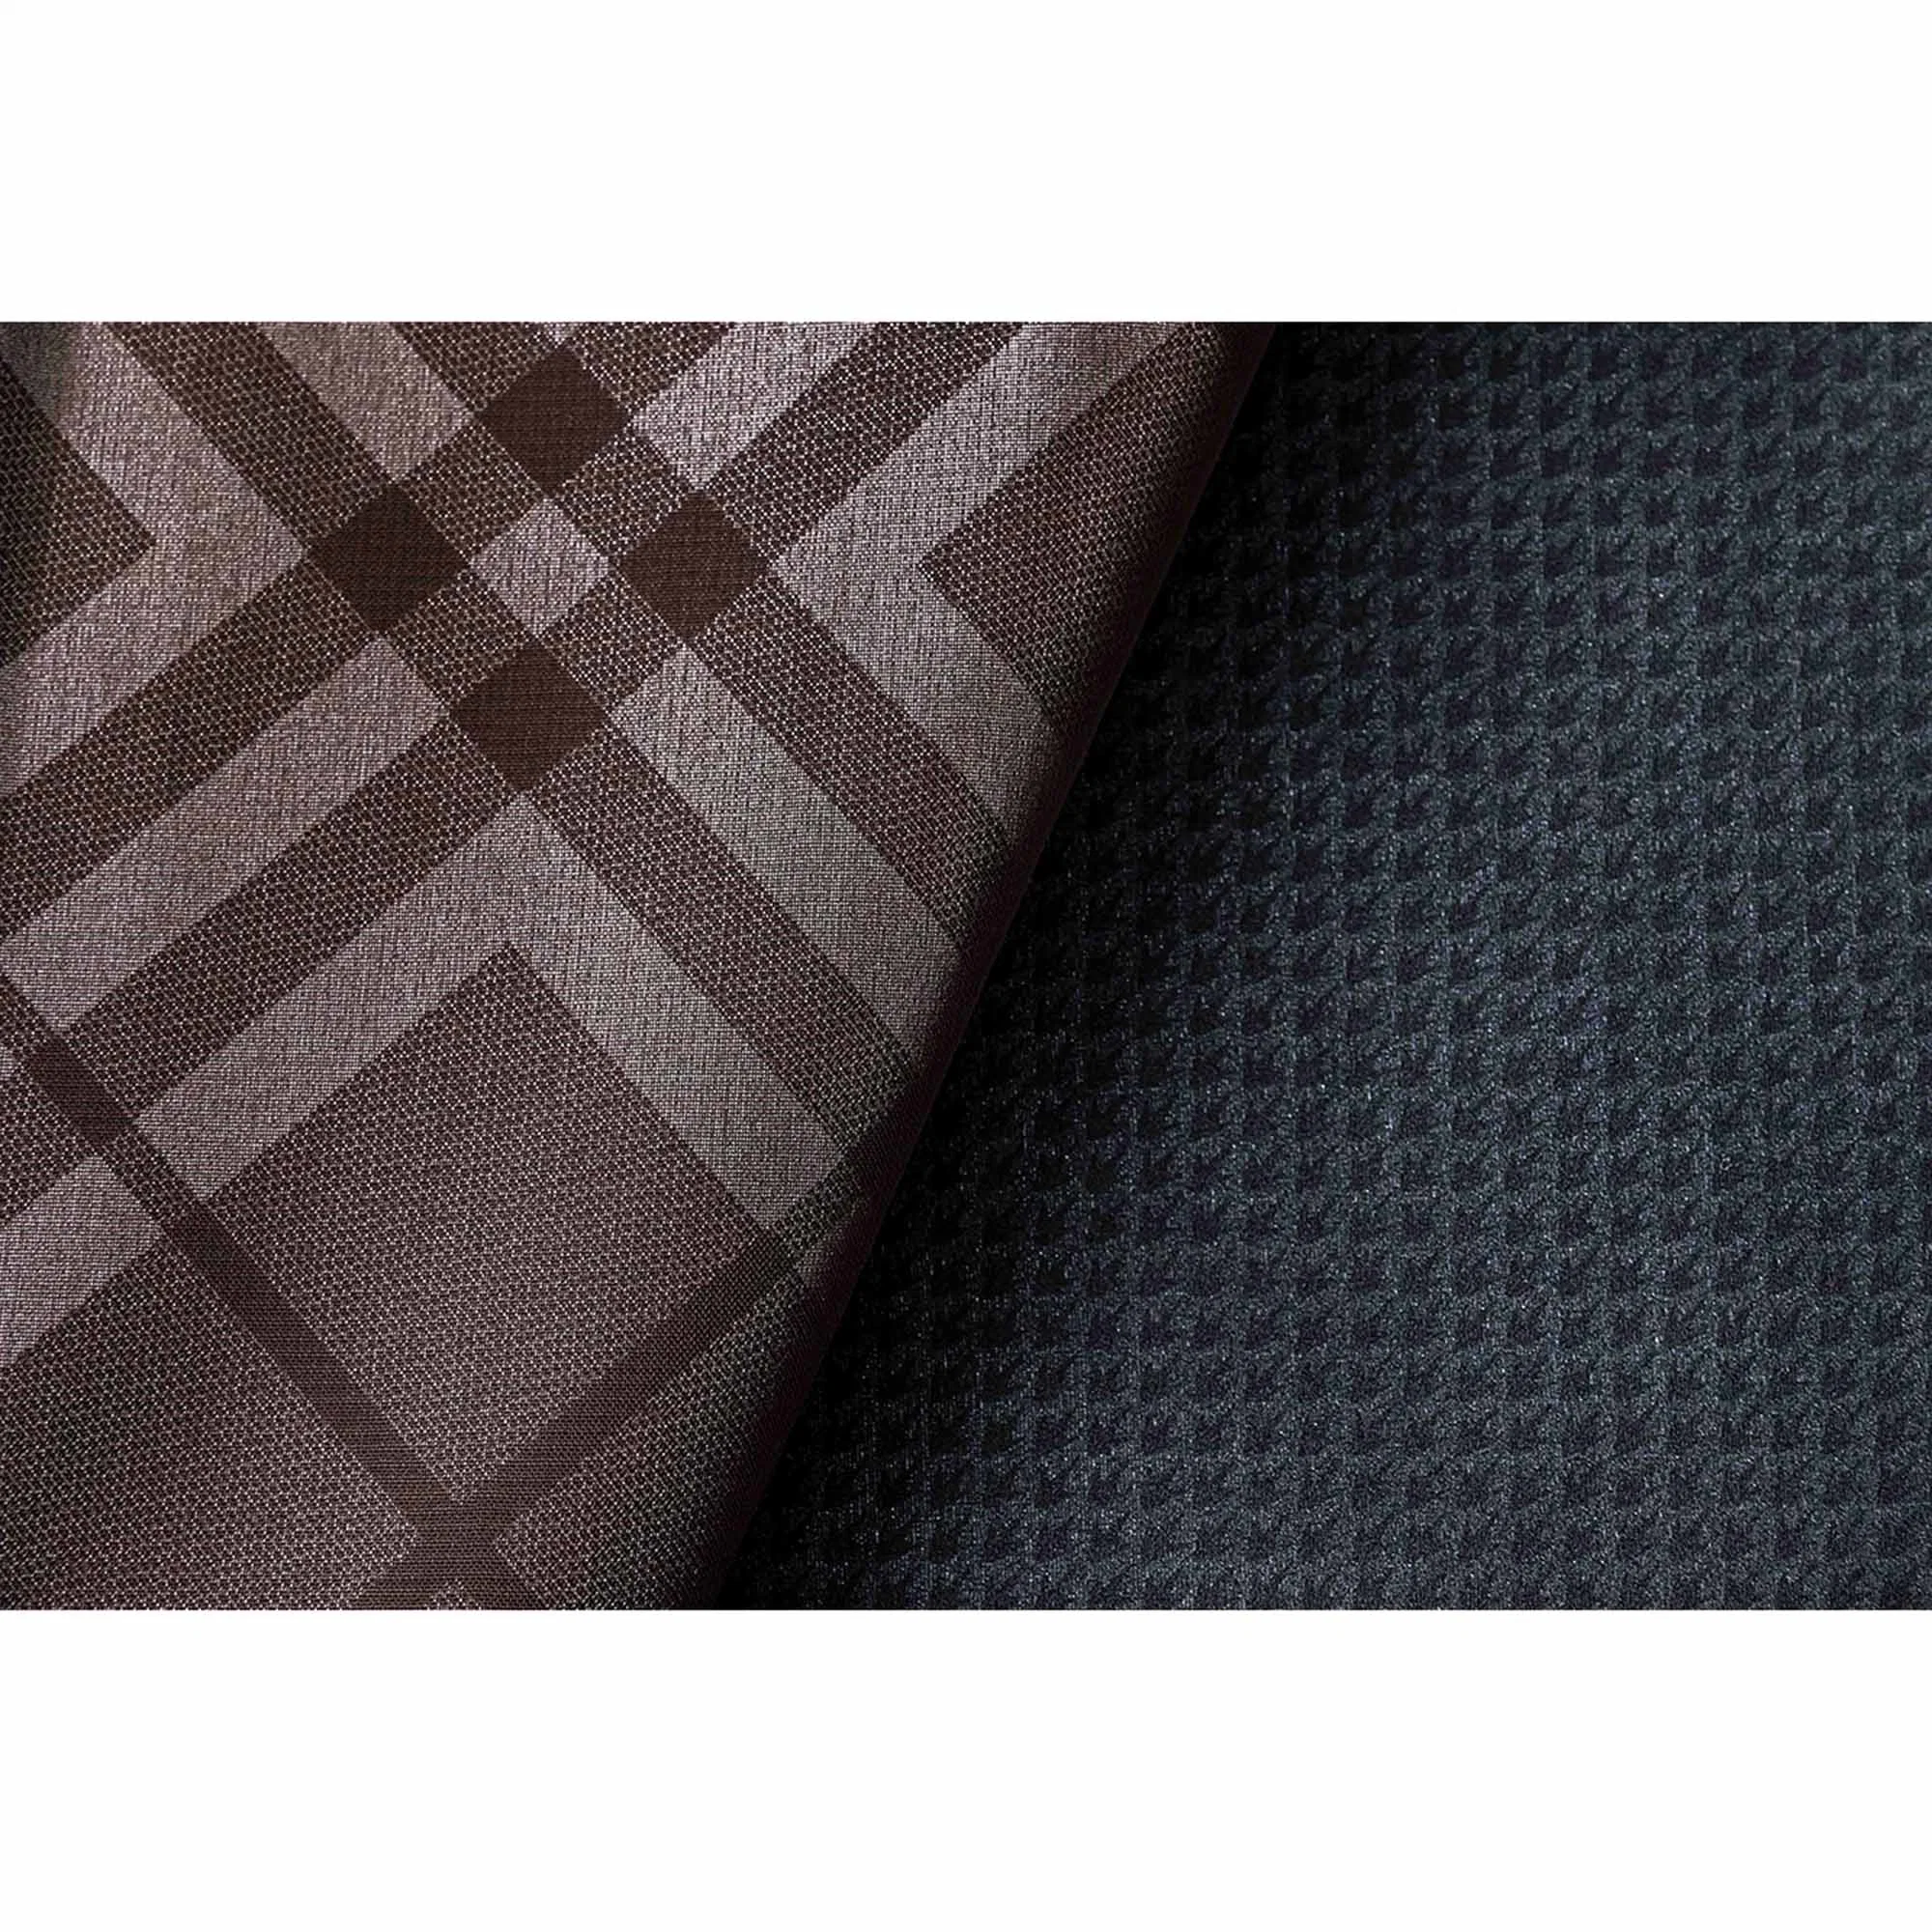 High Technical 100% Polyester Tikko Bonded mit 20D Single Jersey Stoff, beidseitig bedruckte TPU Laminierung für